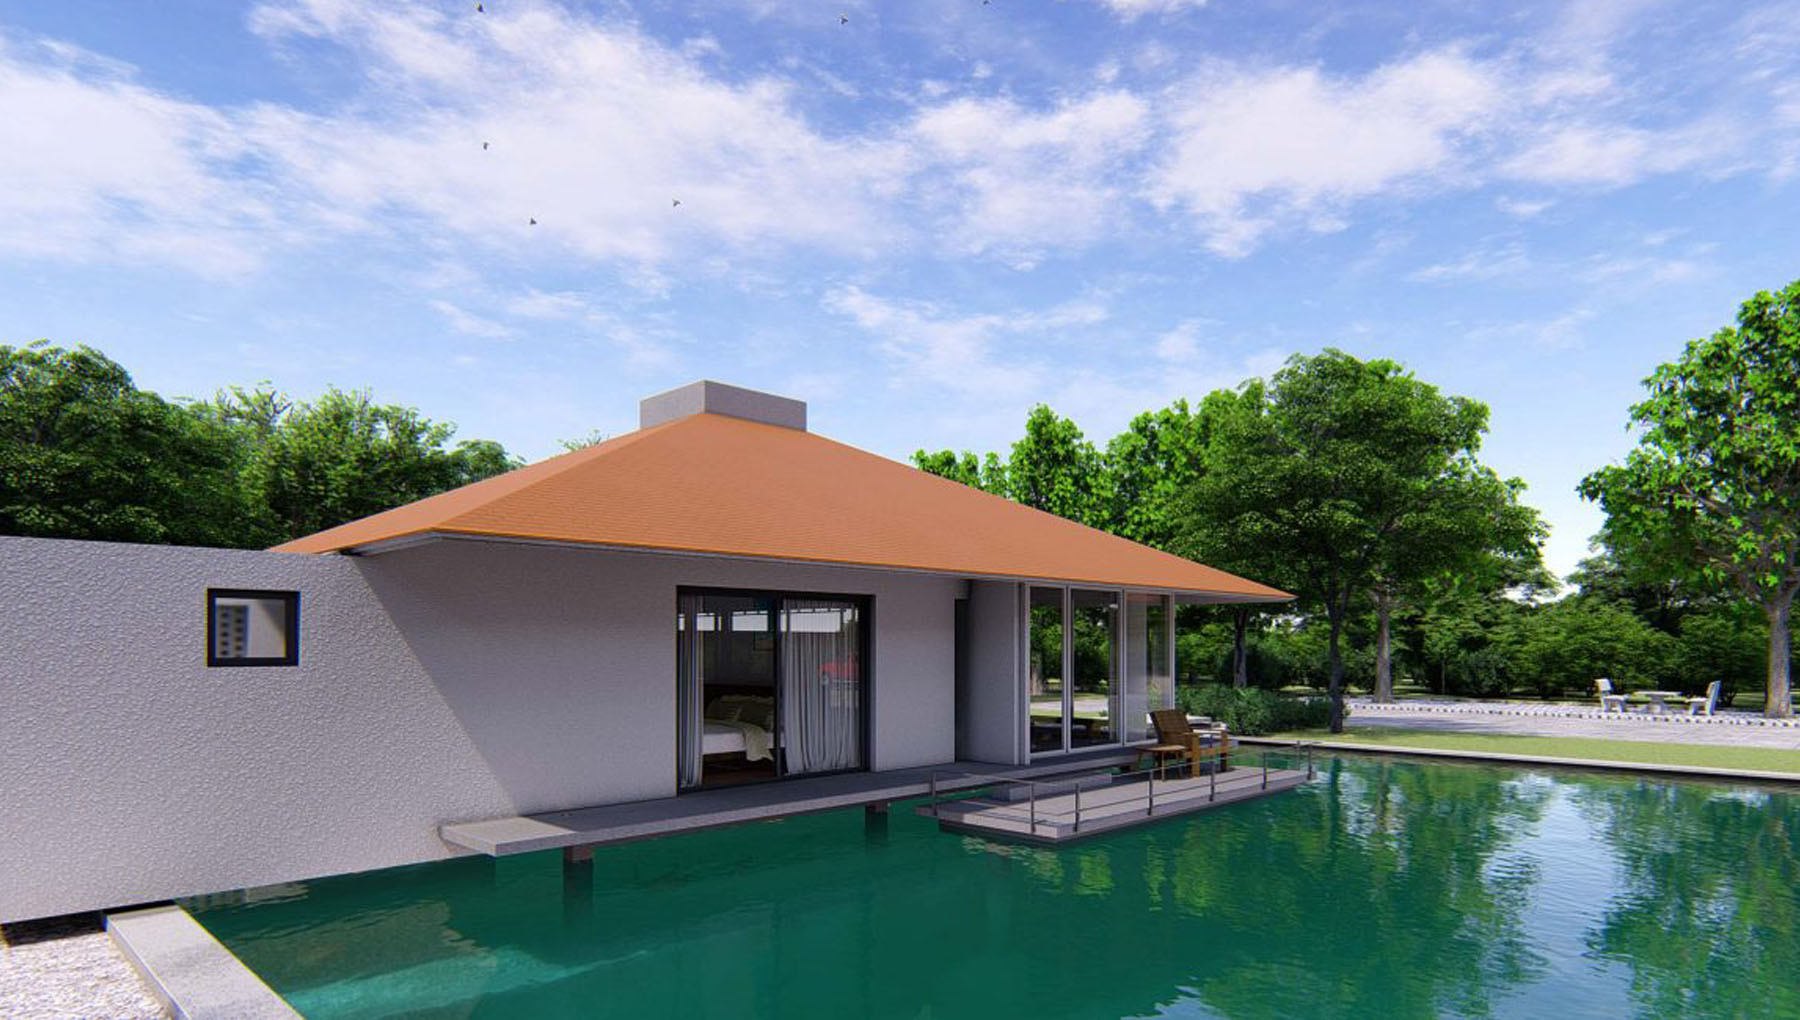 Thiết kế nhà biệt thự sân vườn, bể bơi không gian xanh mát, lãng mạn